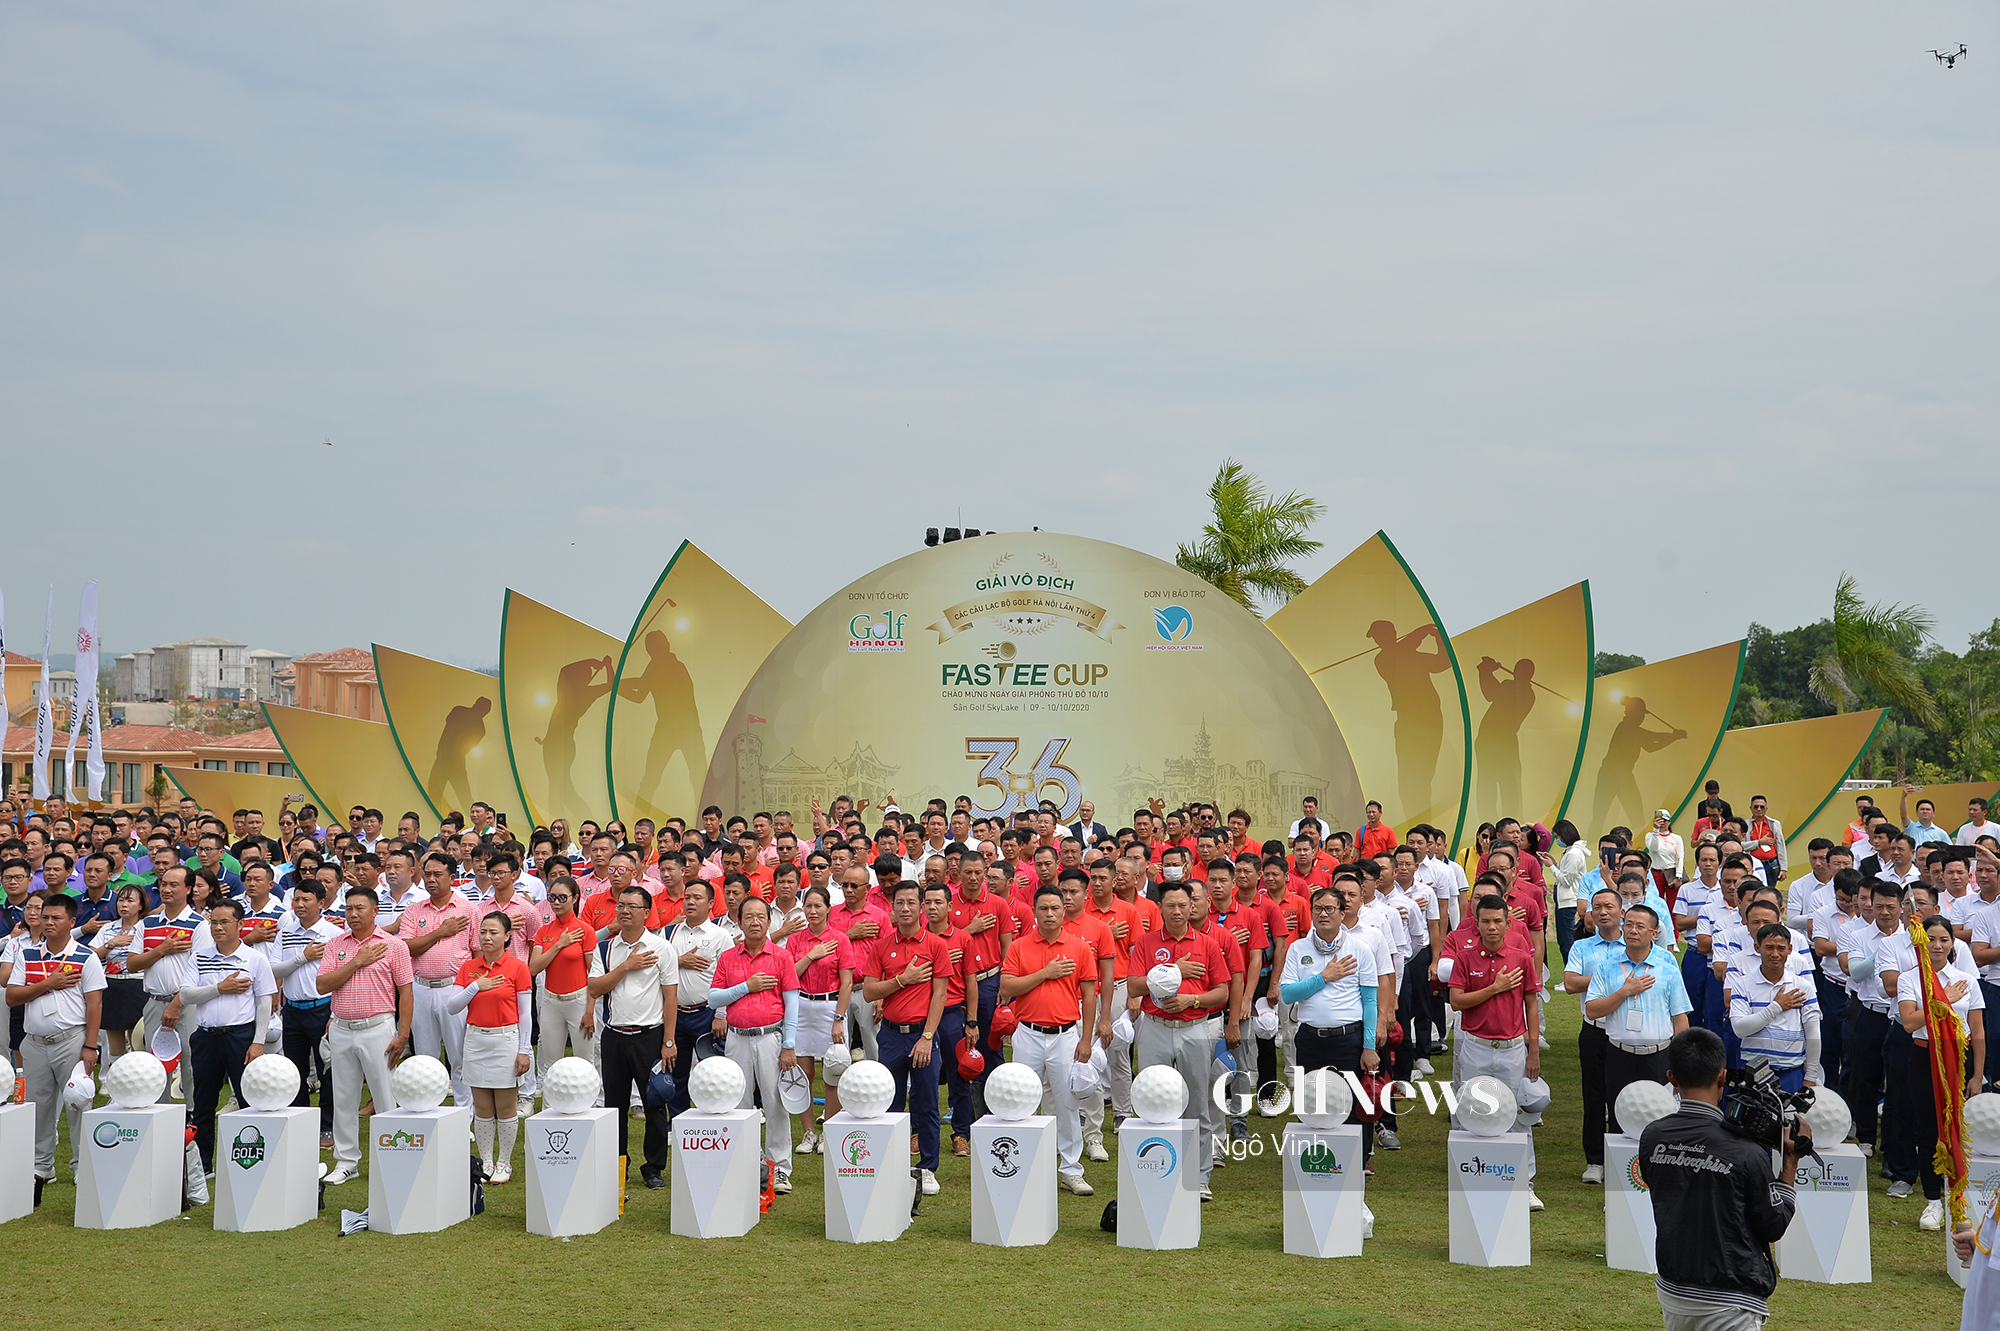 Khai mạc vòng Chung kết giải Vô địch các CLB Golf Hà Nội lần 4 – Fastee Cup 2020